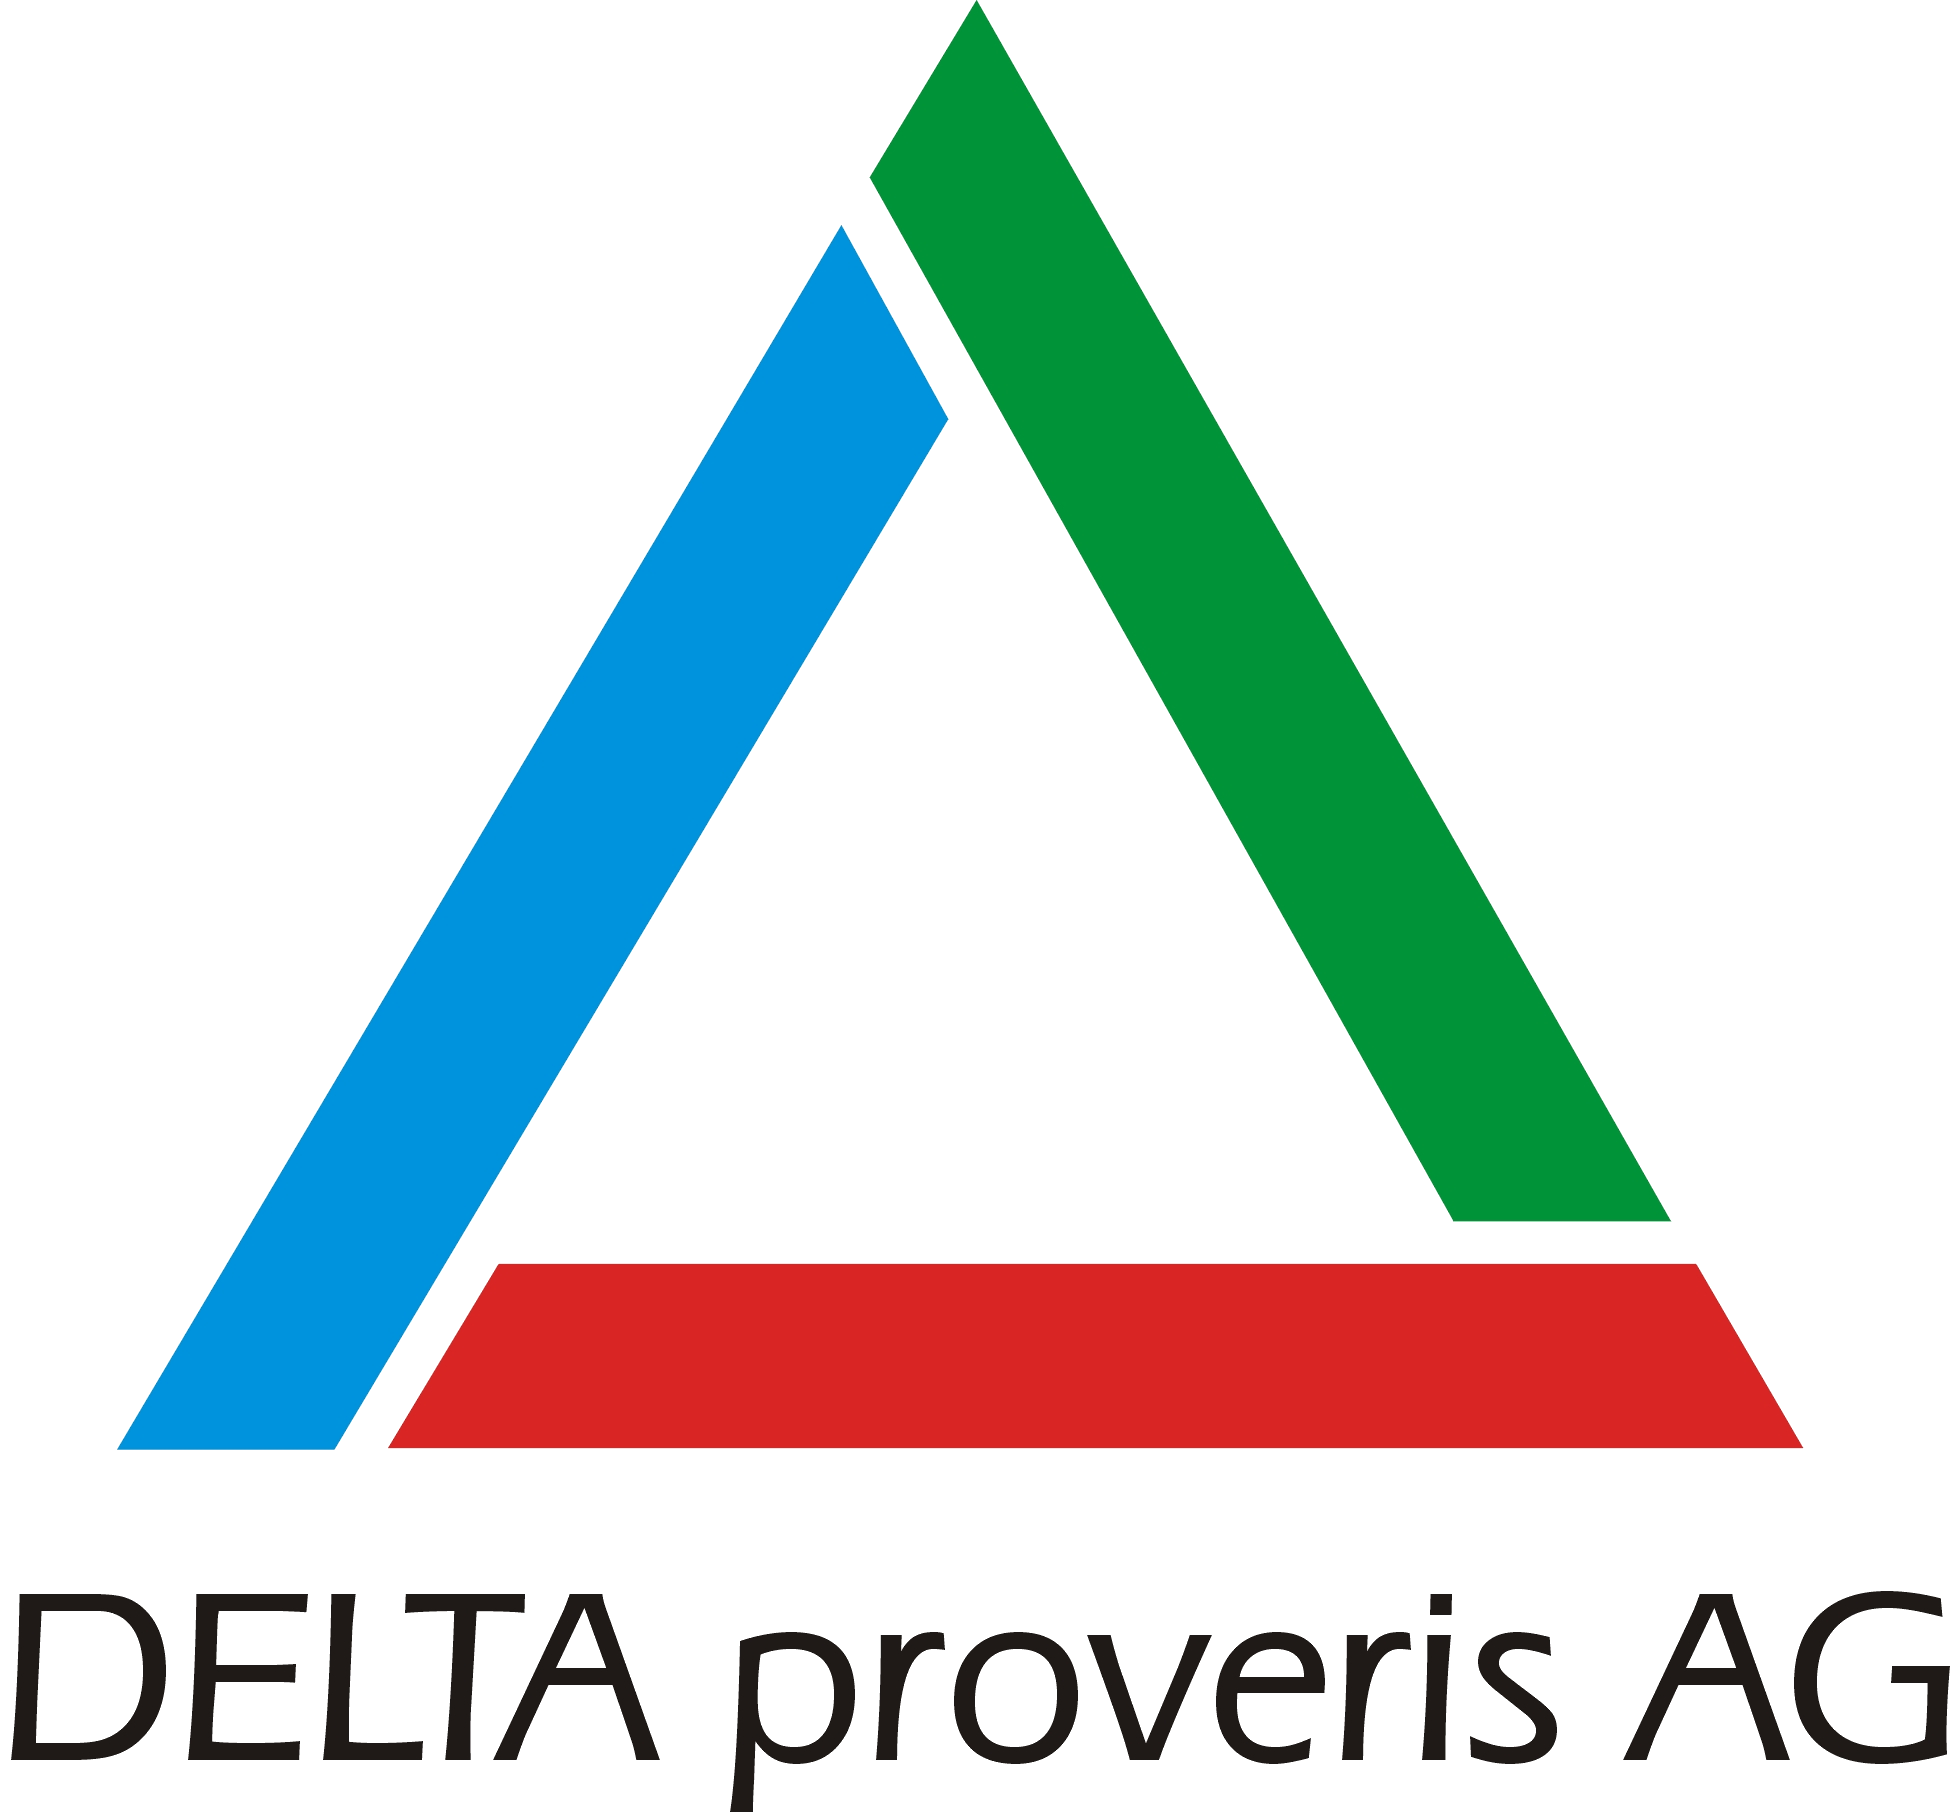 Logo Delta proveris AG